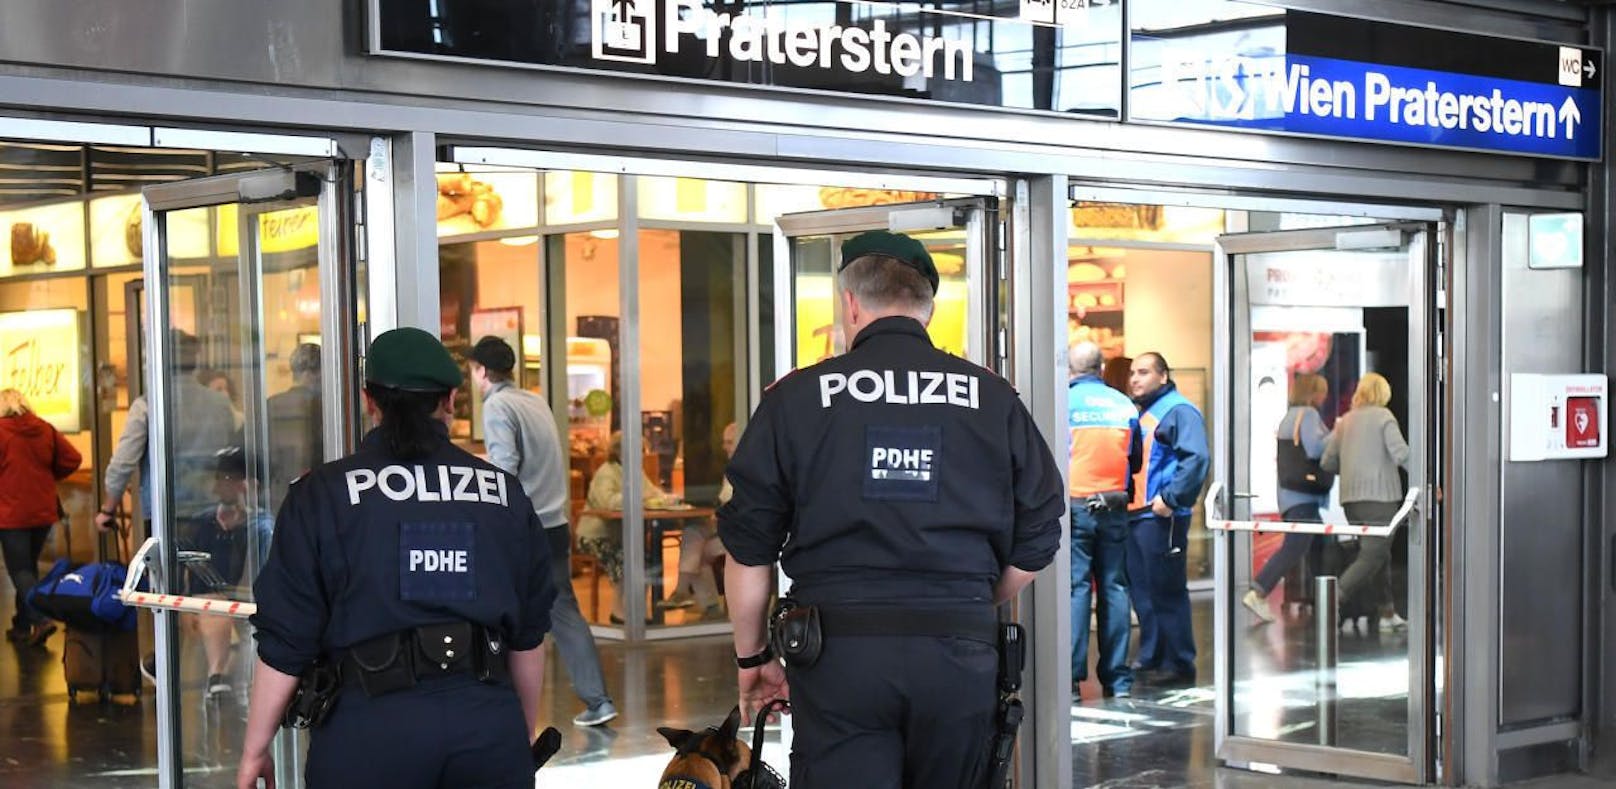 Polizisten konnten den Verdächtigen bei einer Kontrolle am Wiener Praterstern festnehmen.